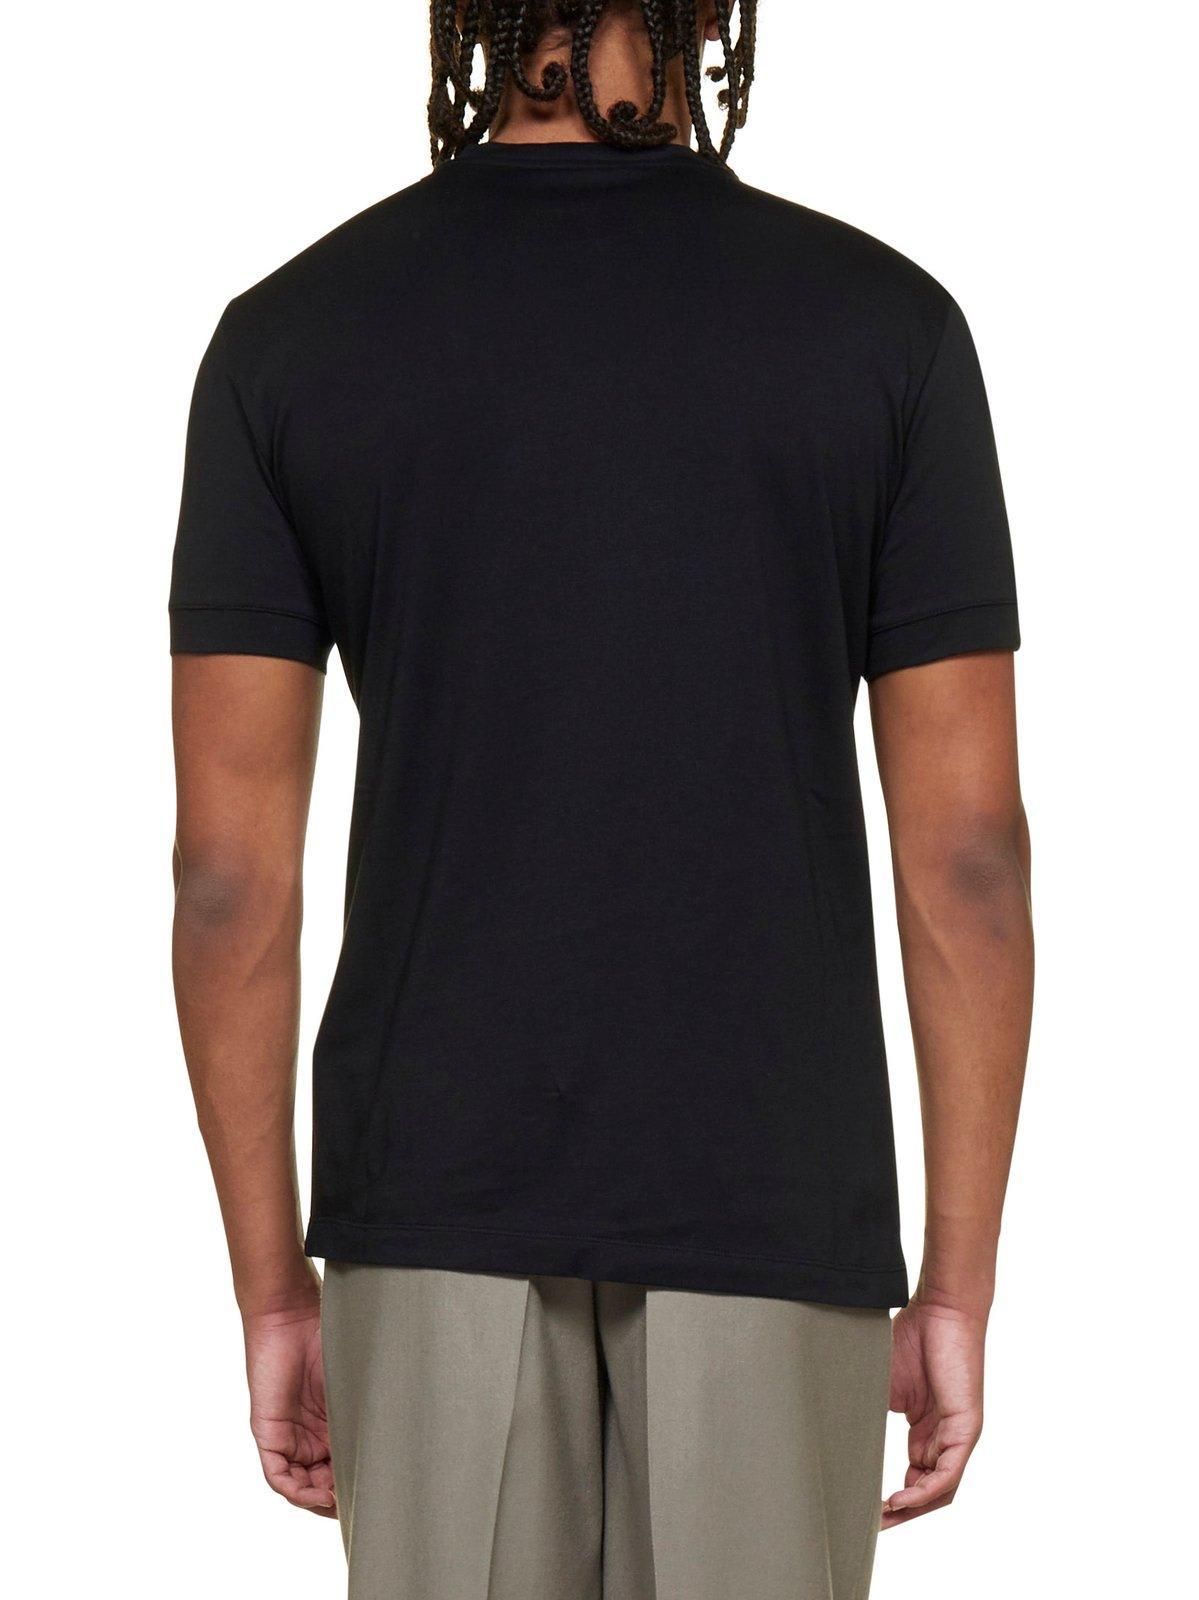 T-shirts Giorgio Armani - Logo printed T-shirt - 3GST57SJMCZUC99